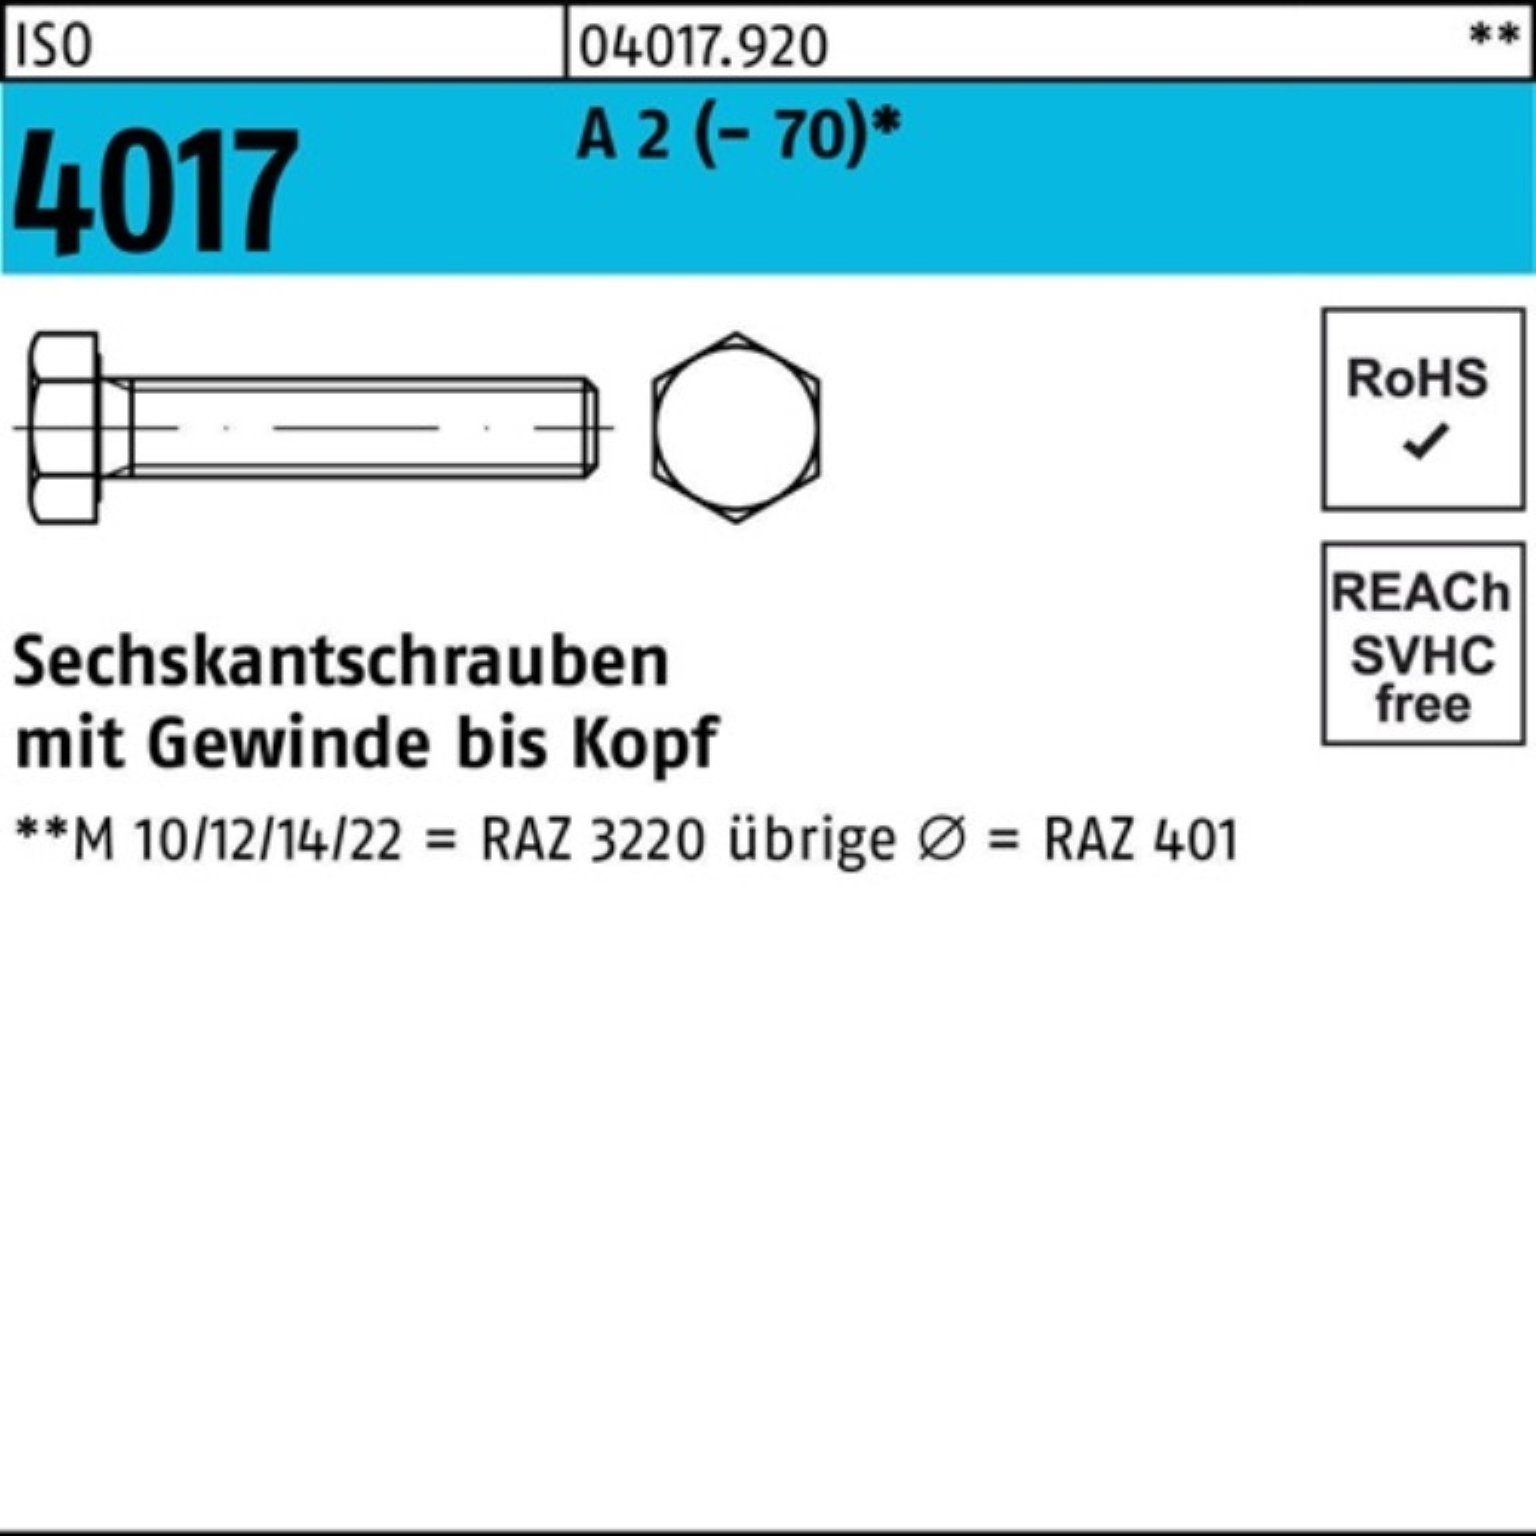 Pack Bufab (70) A Sechskantschraube 4017 M36x ISO 100er 2 VG Stück 130 Sechskantschraube 1